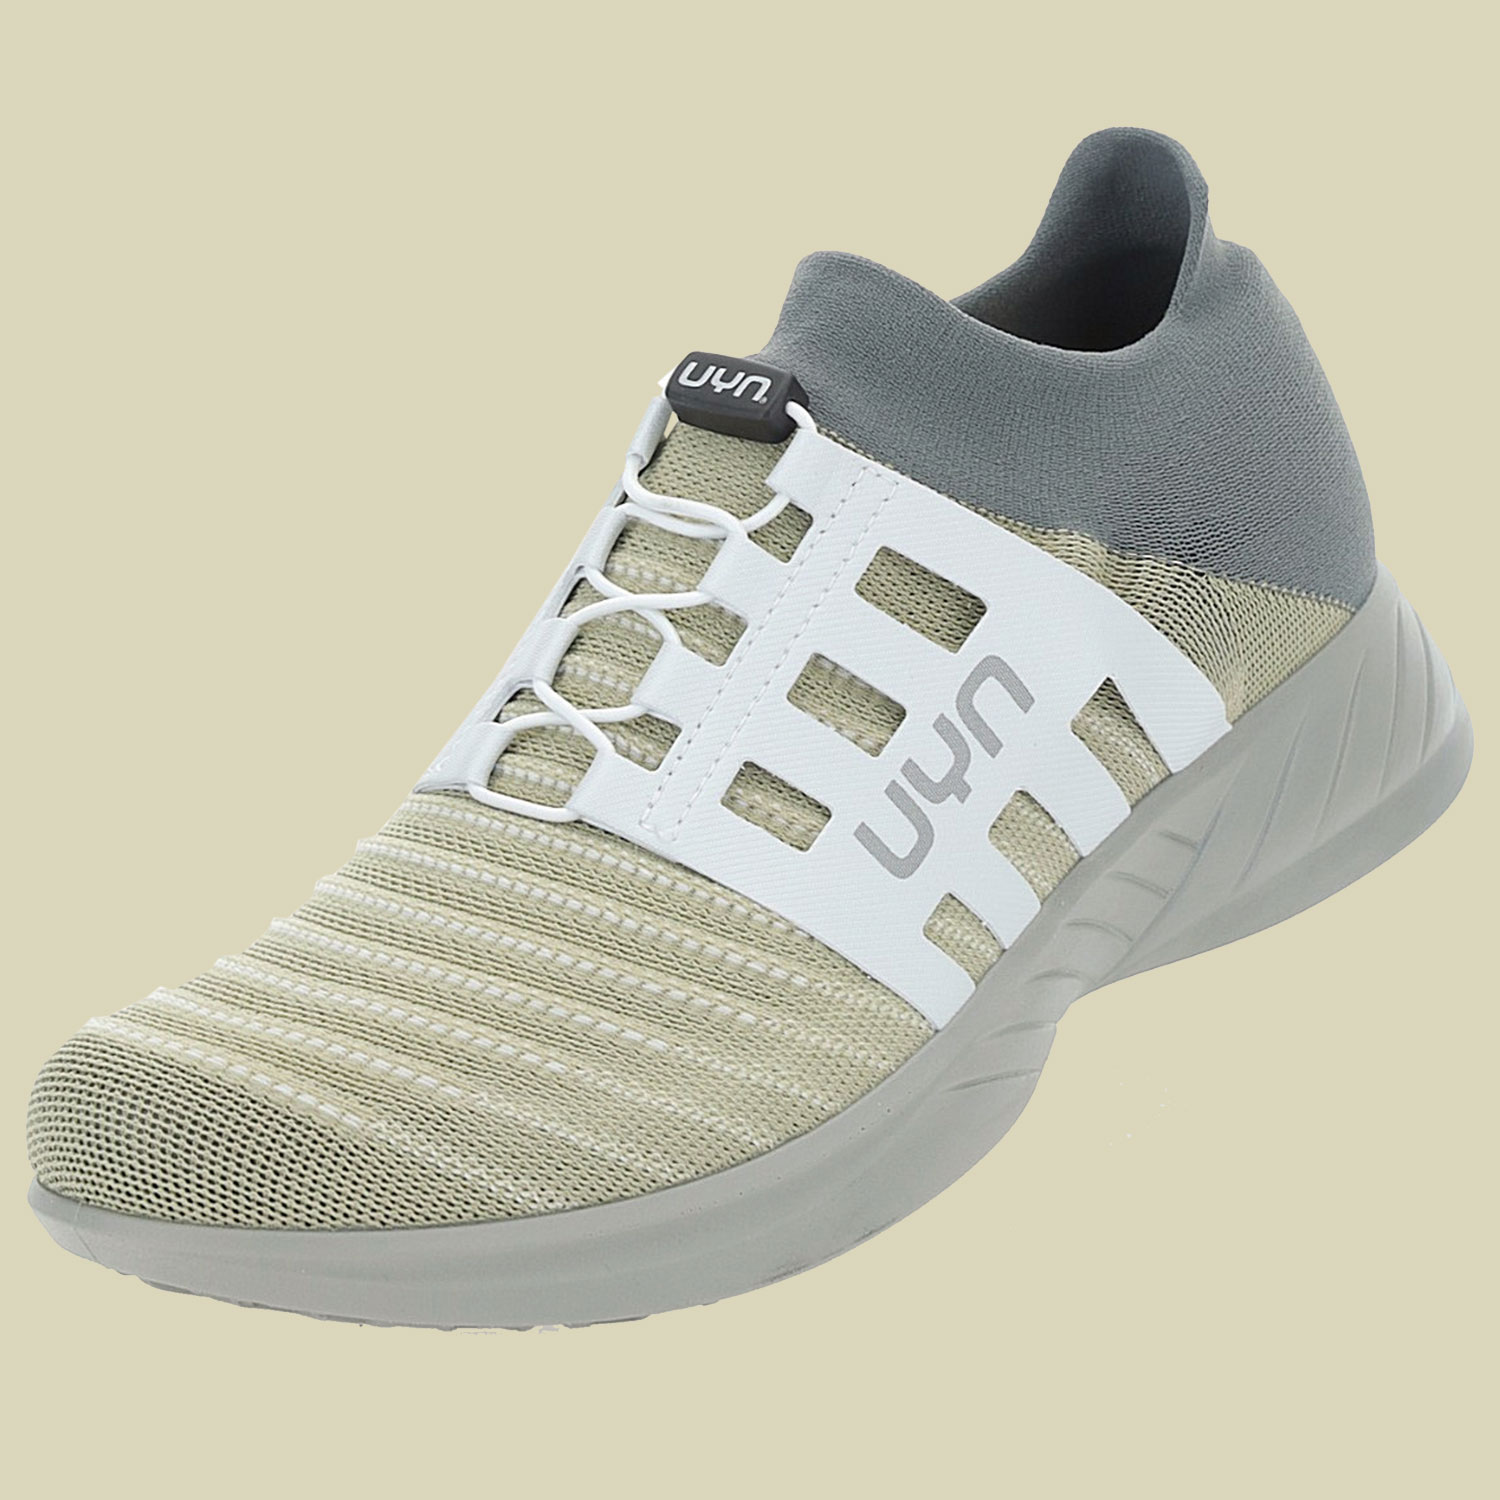 Ecolypt Tune Shoes Grey Sole Women Größe 37 Farbe beige